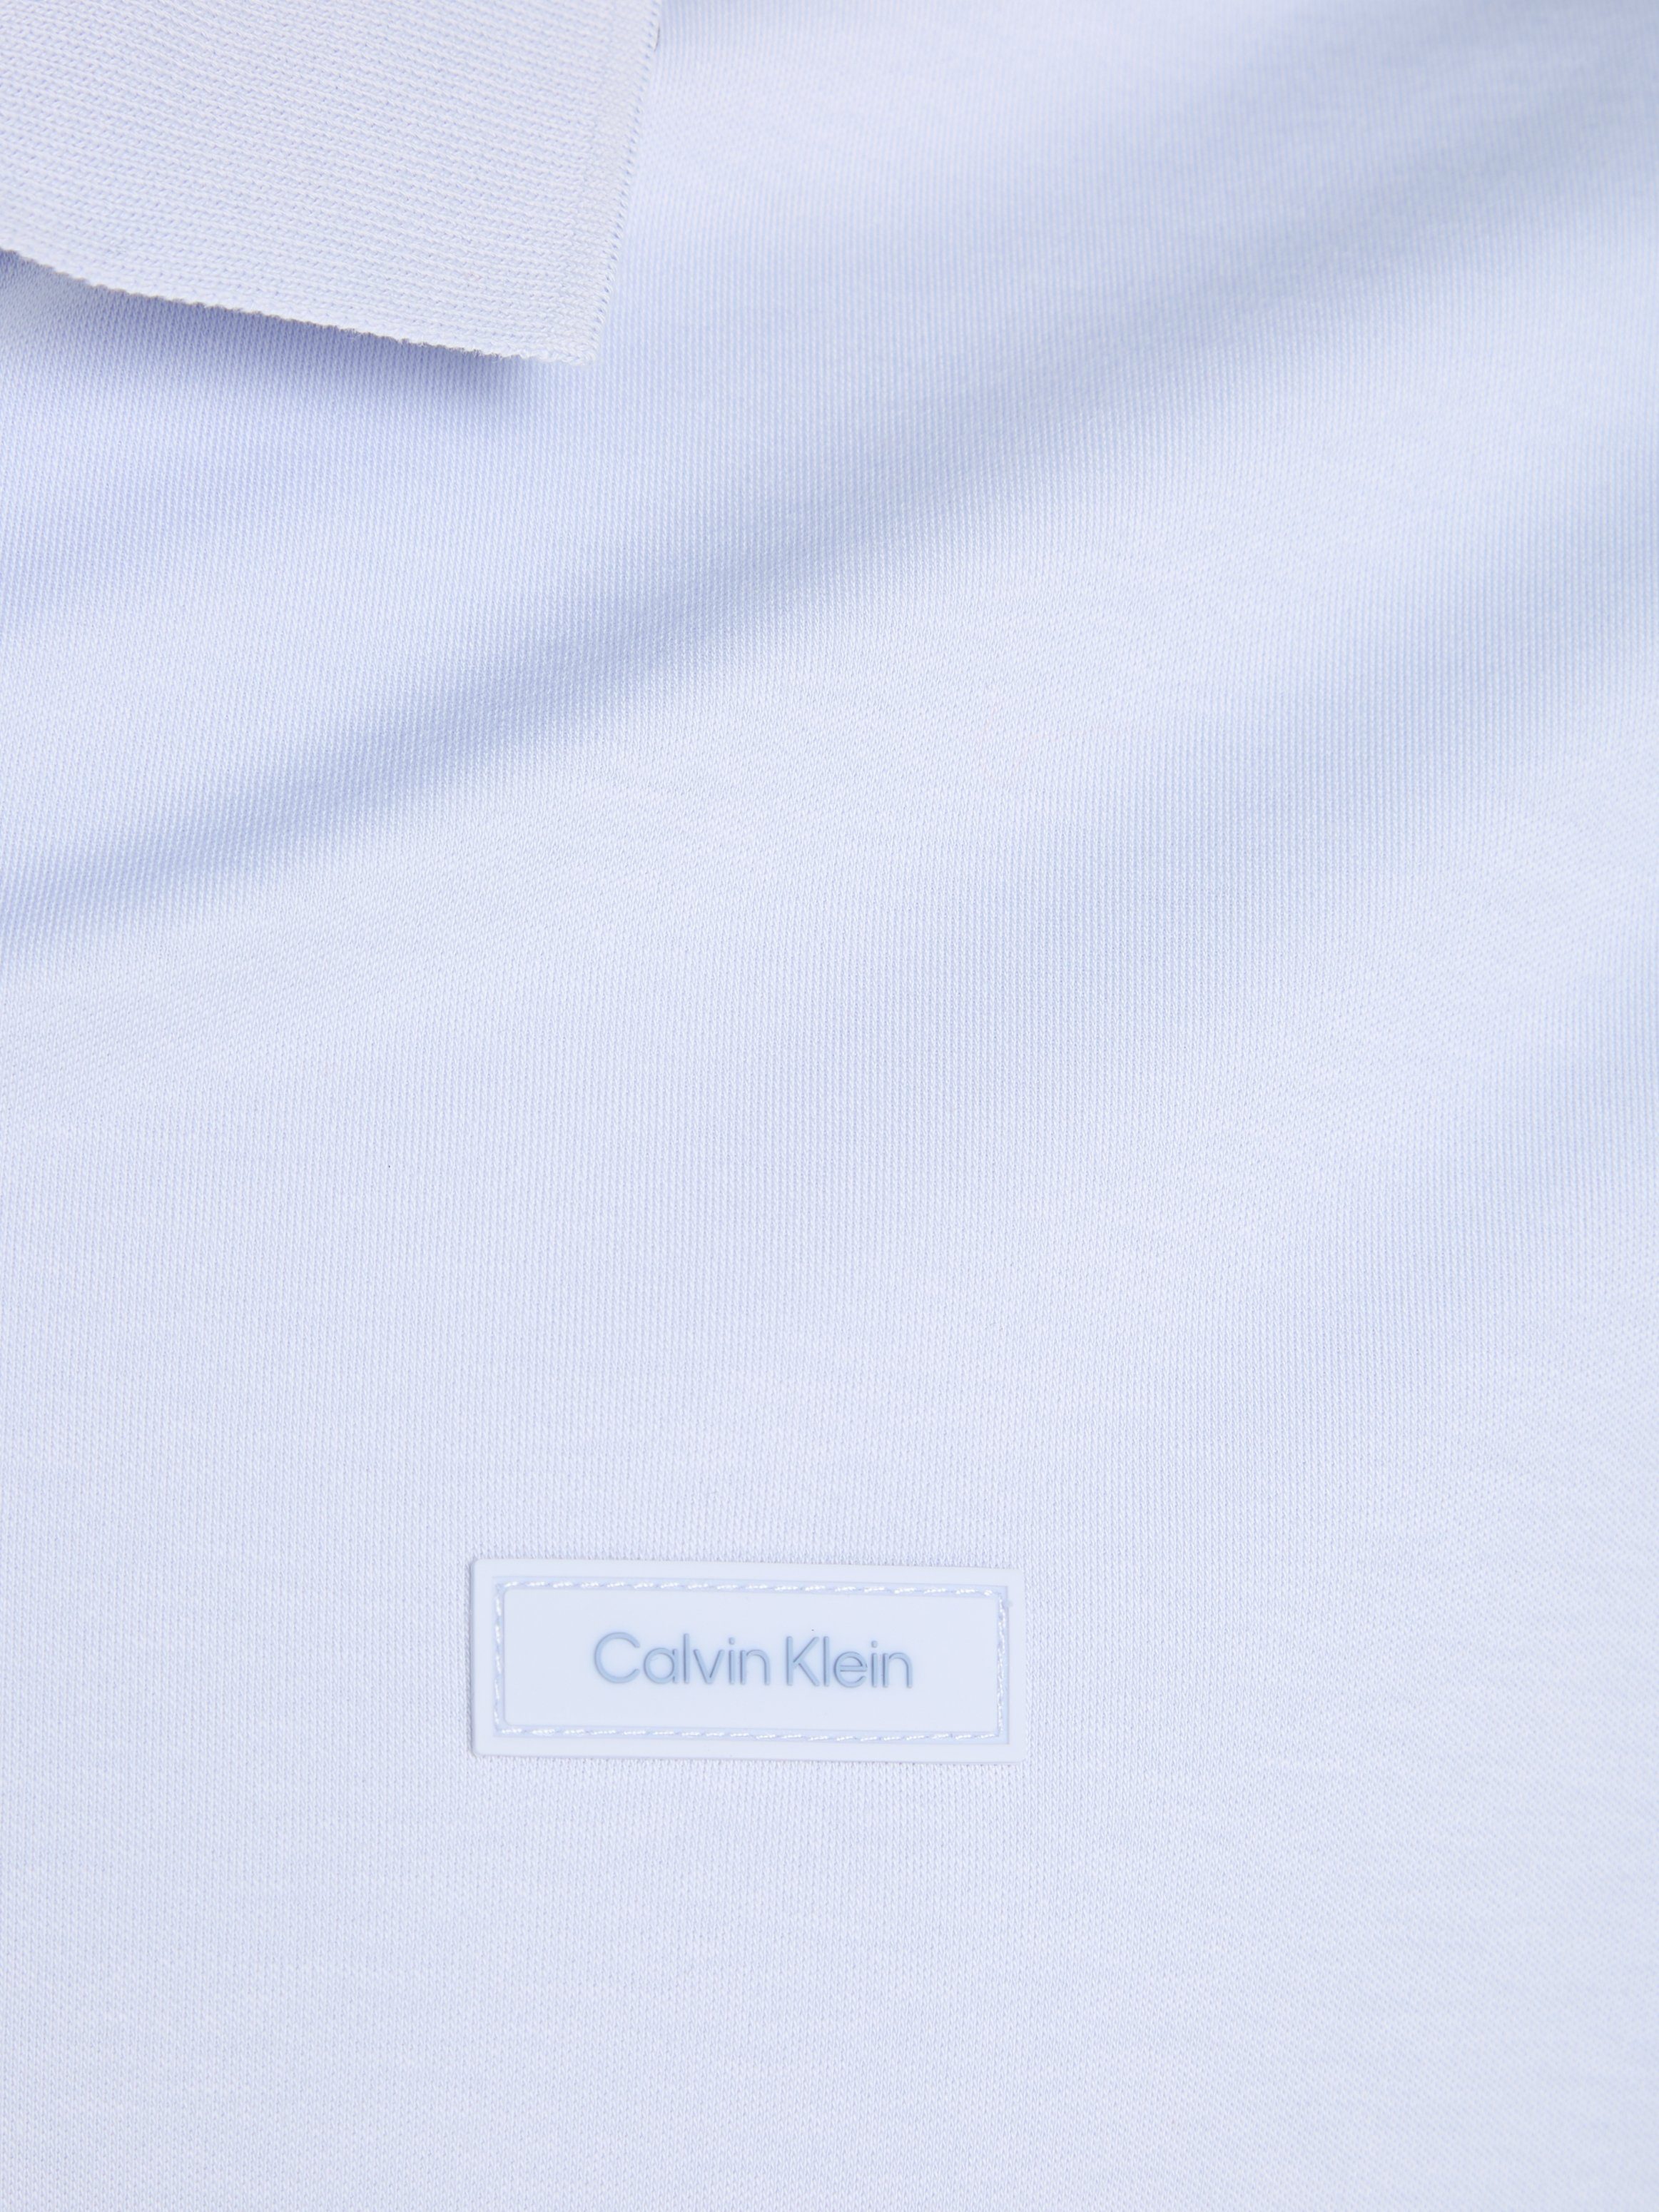 POLO Klein Calvin COTTON Blue Poloshirt SLIM Light SMOOTH